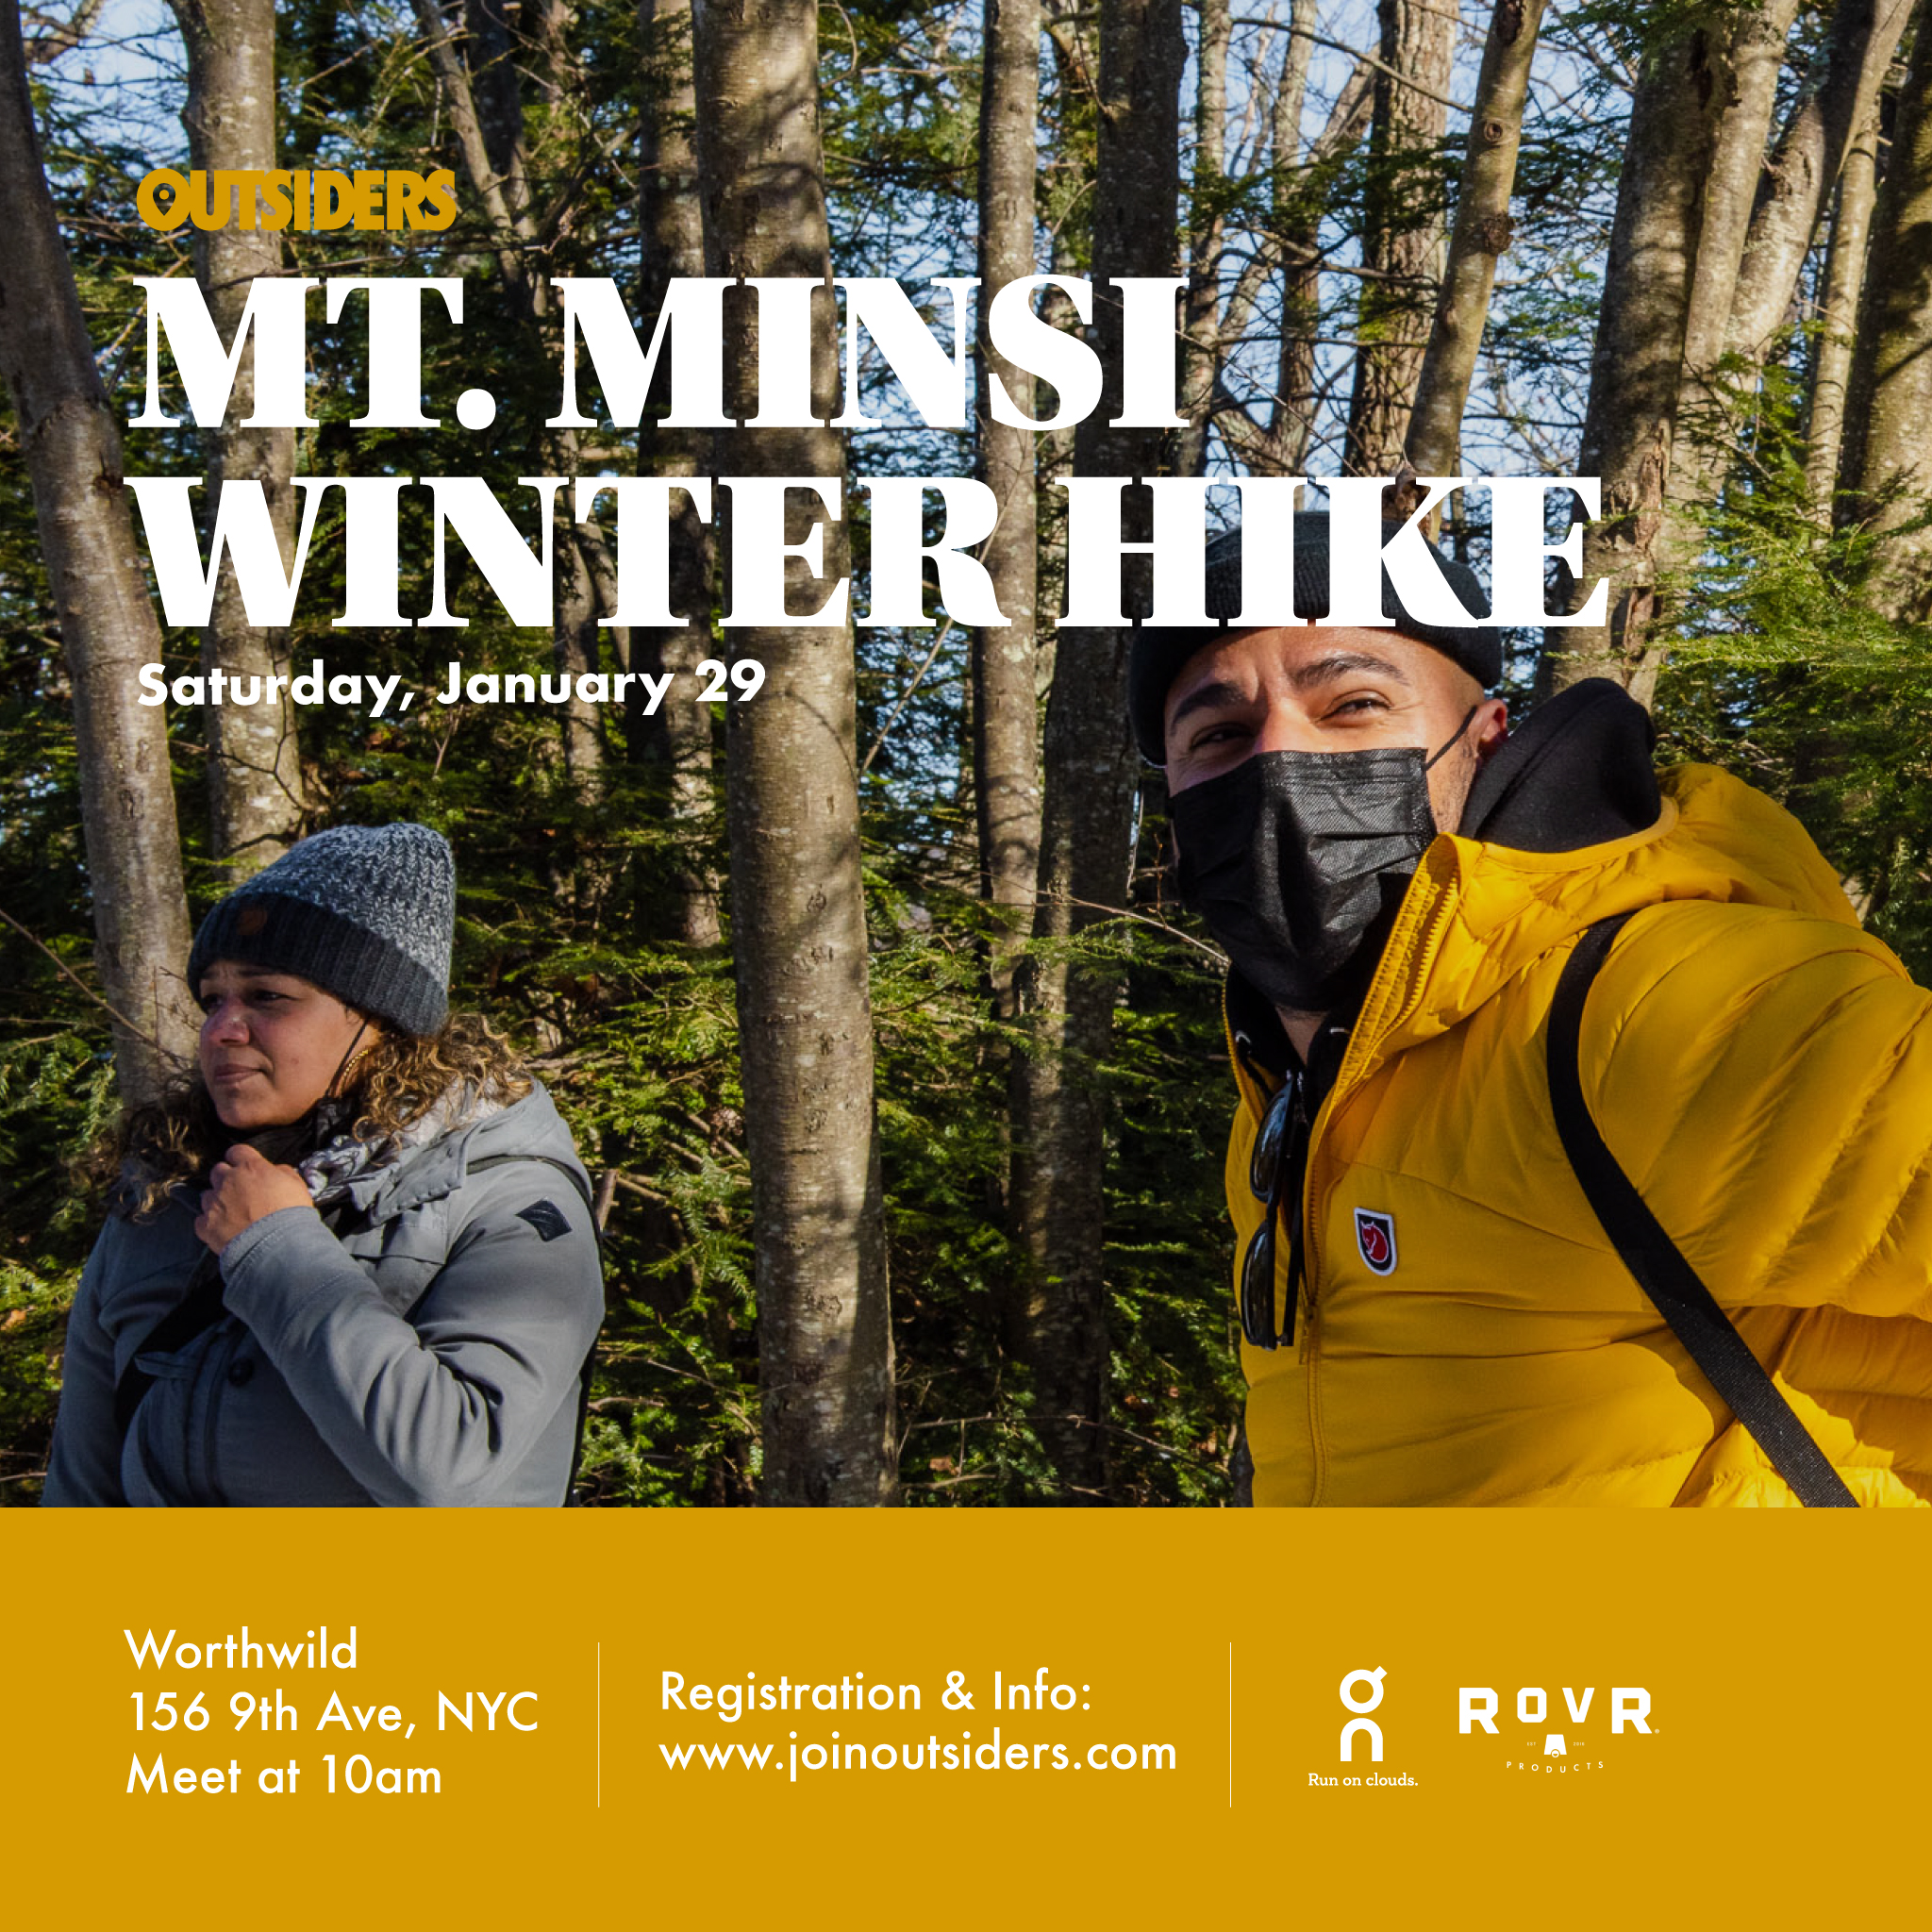 Mt. Minsi Winter Hike Saturday